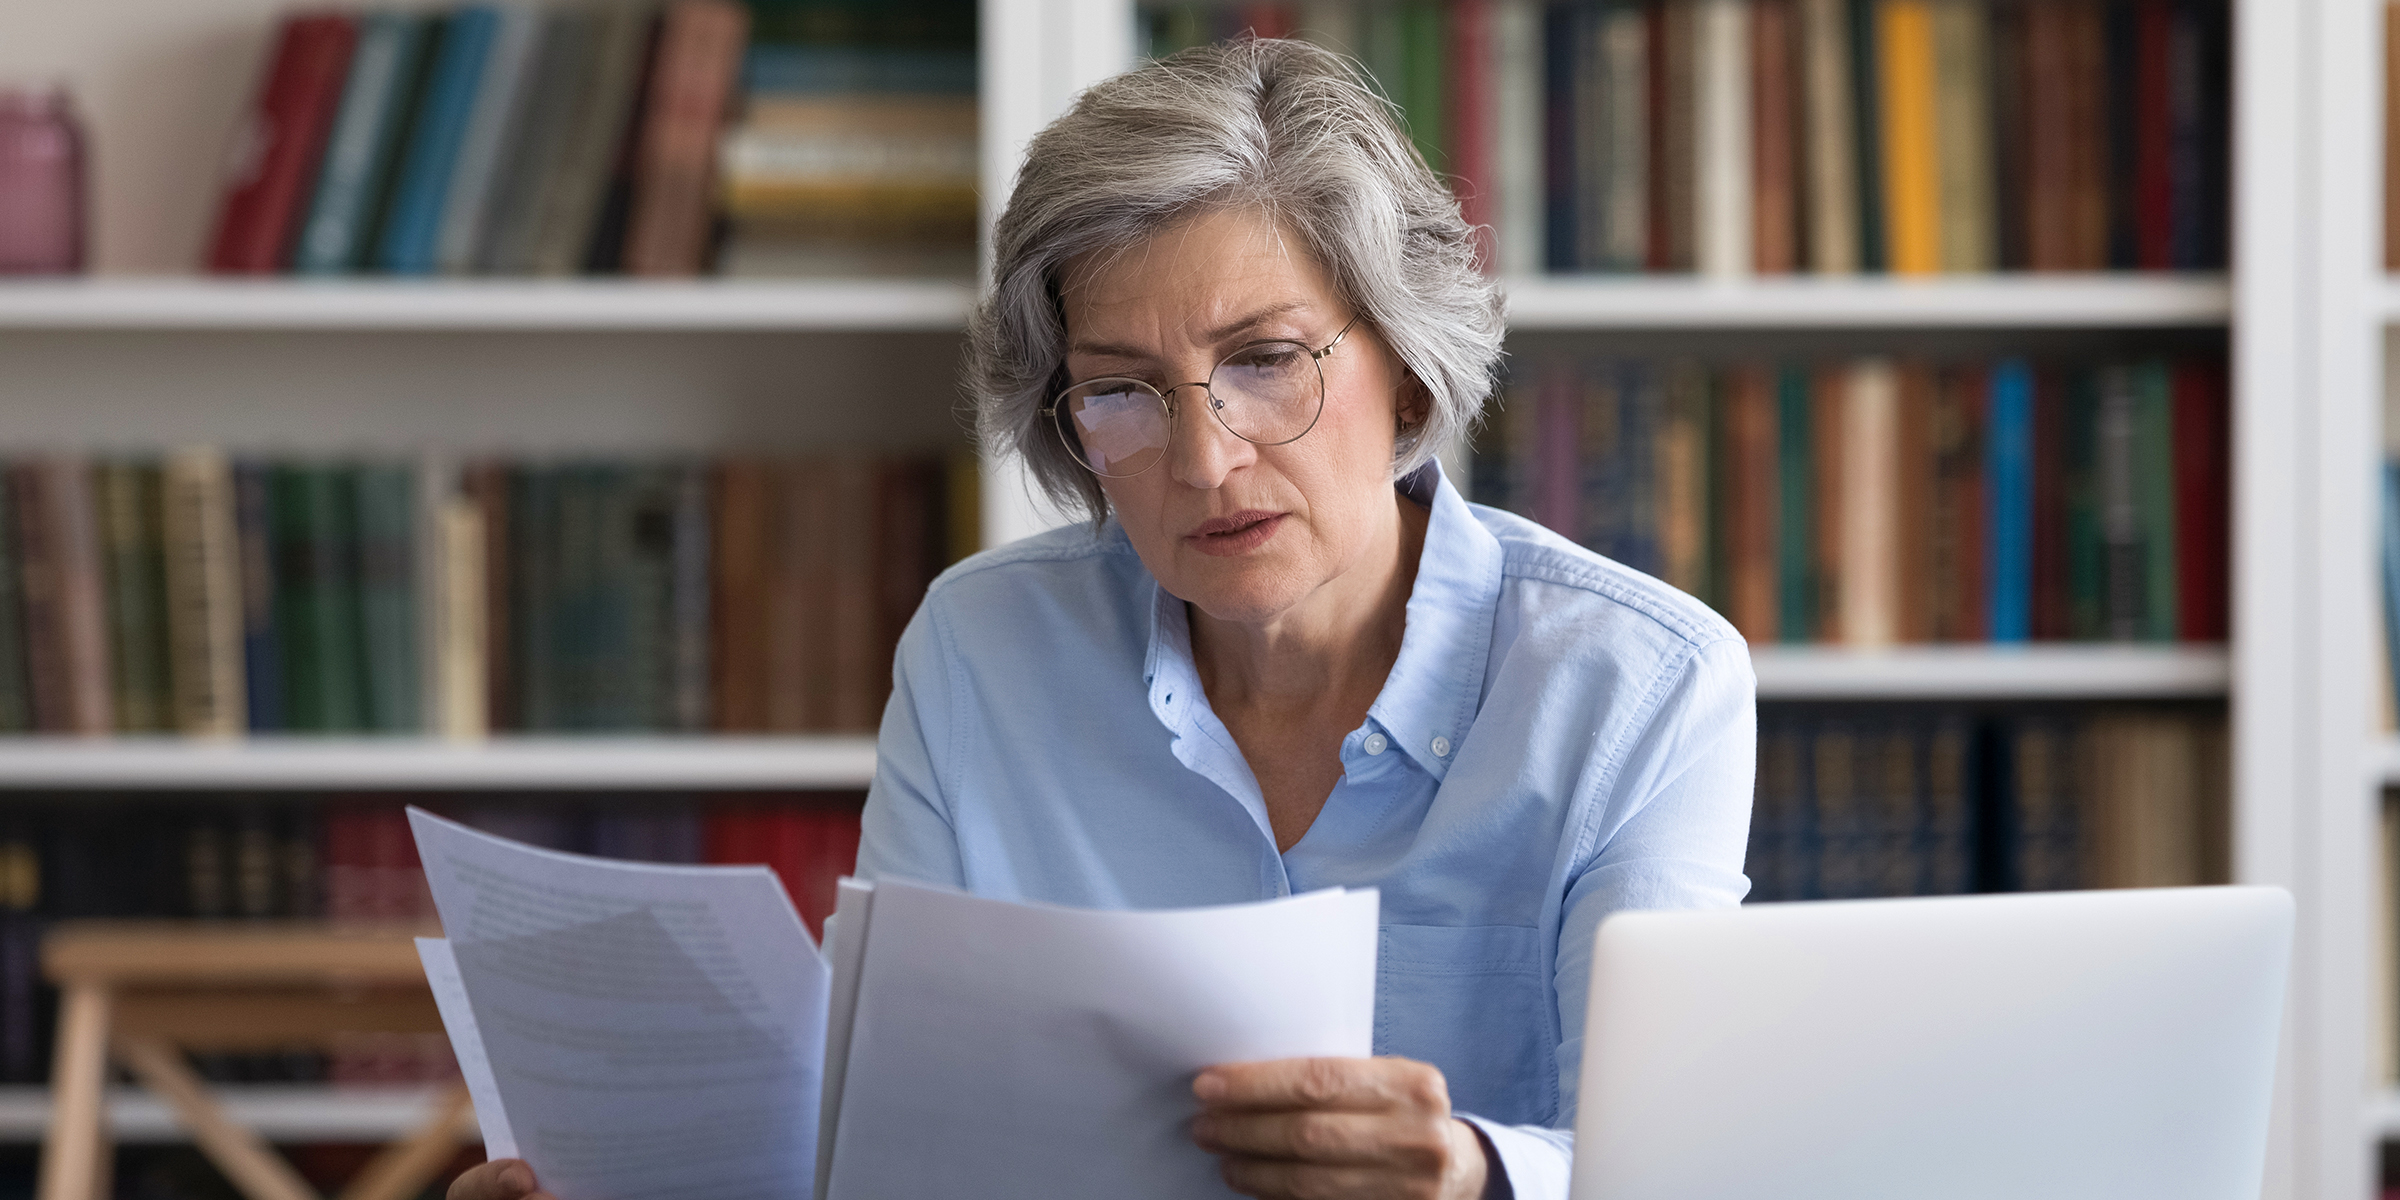 Eine ältere Dame beim Lesen von Dokumenten | Quelle: Shutterstock